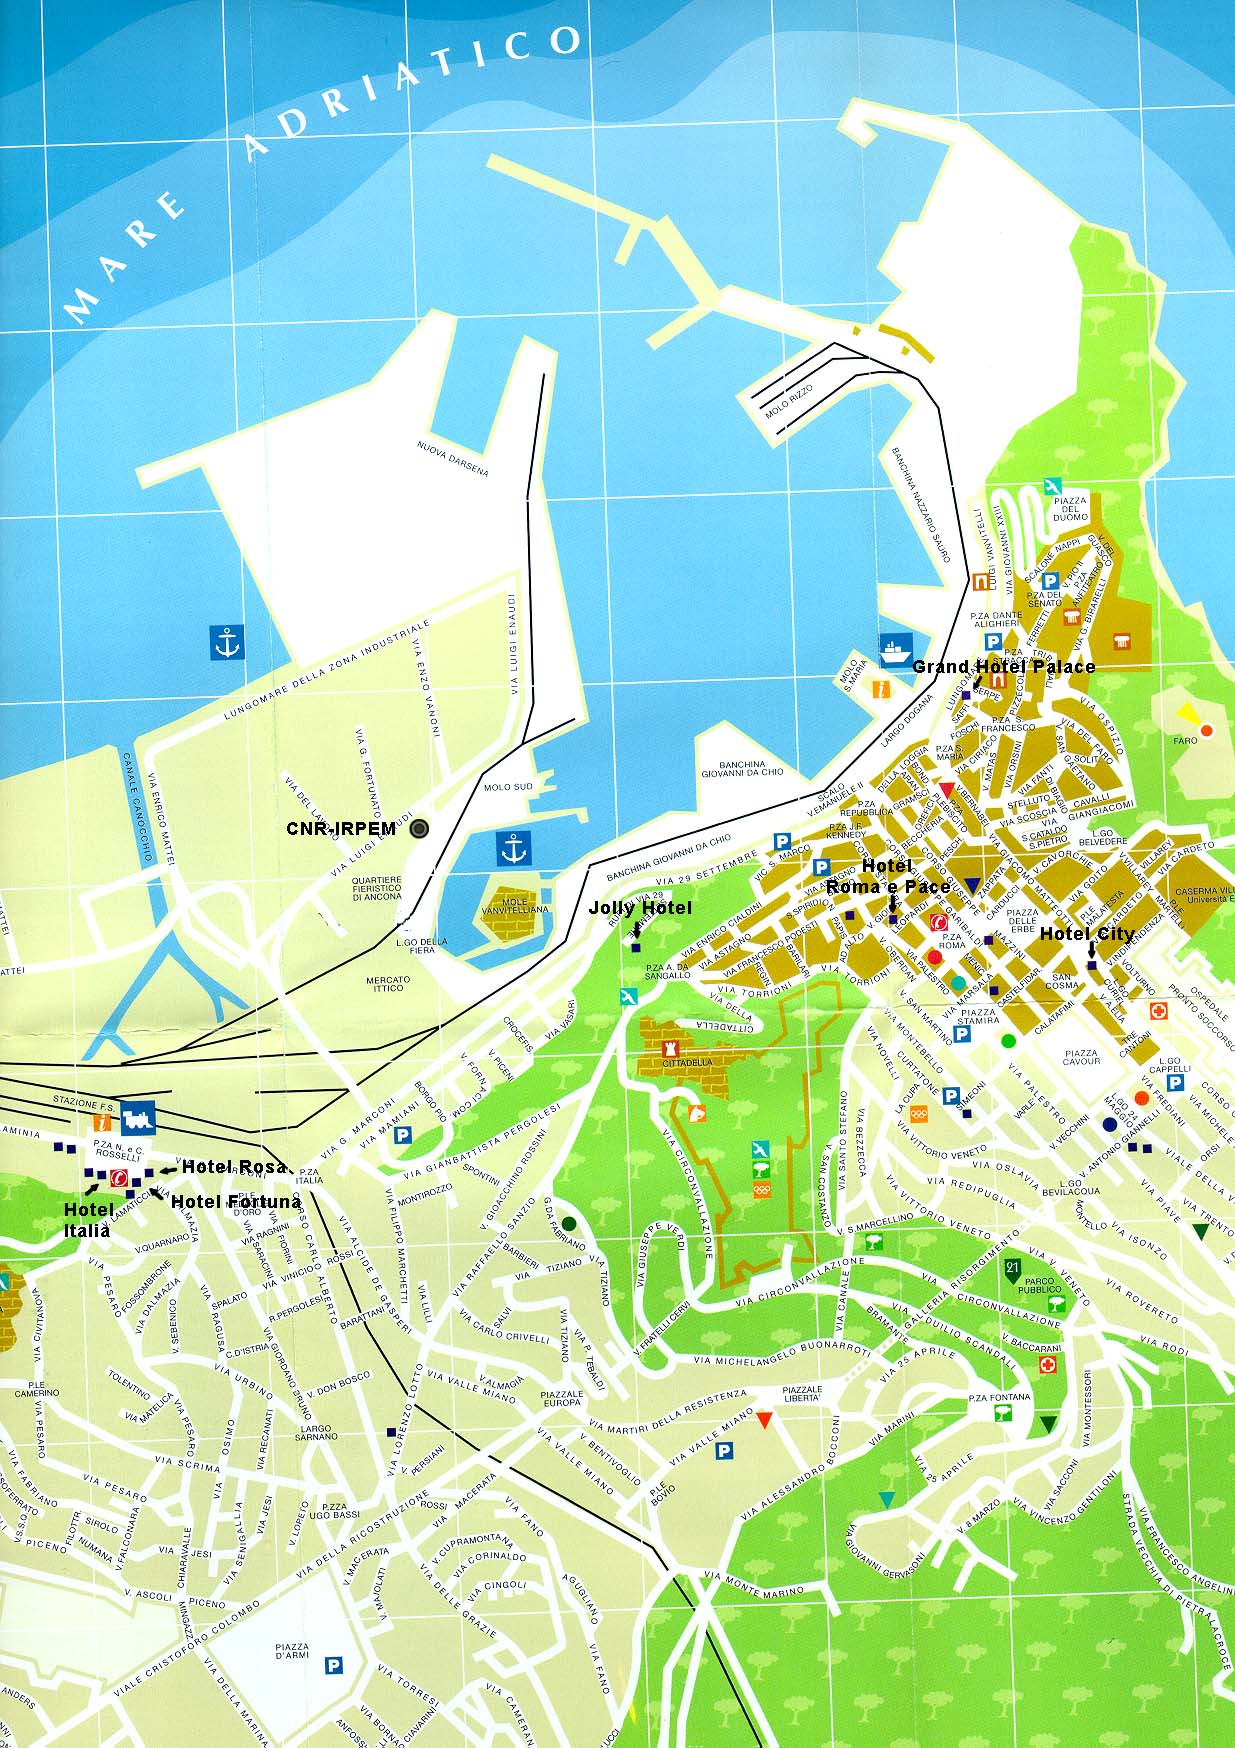 Ancona Map and Ancona Satellite Image